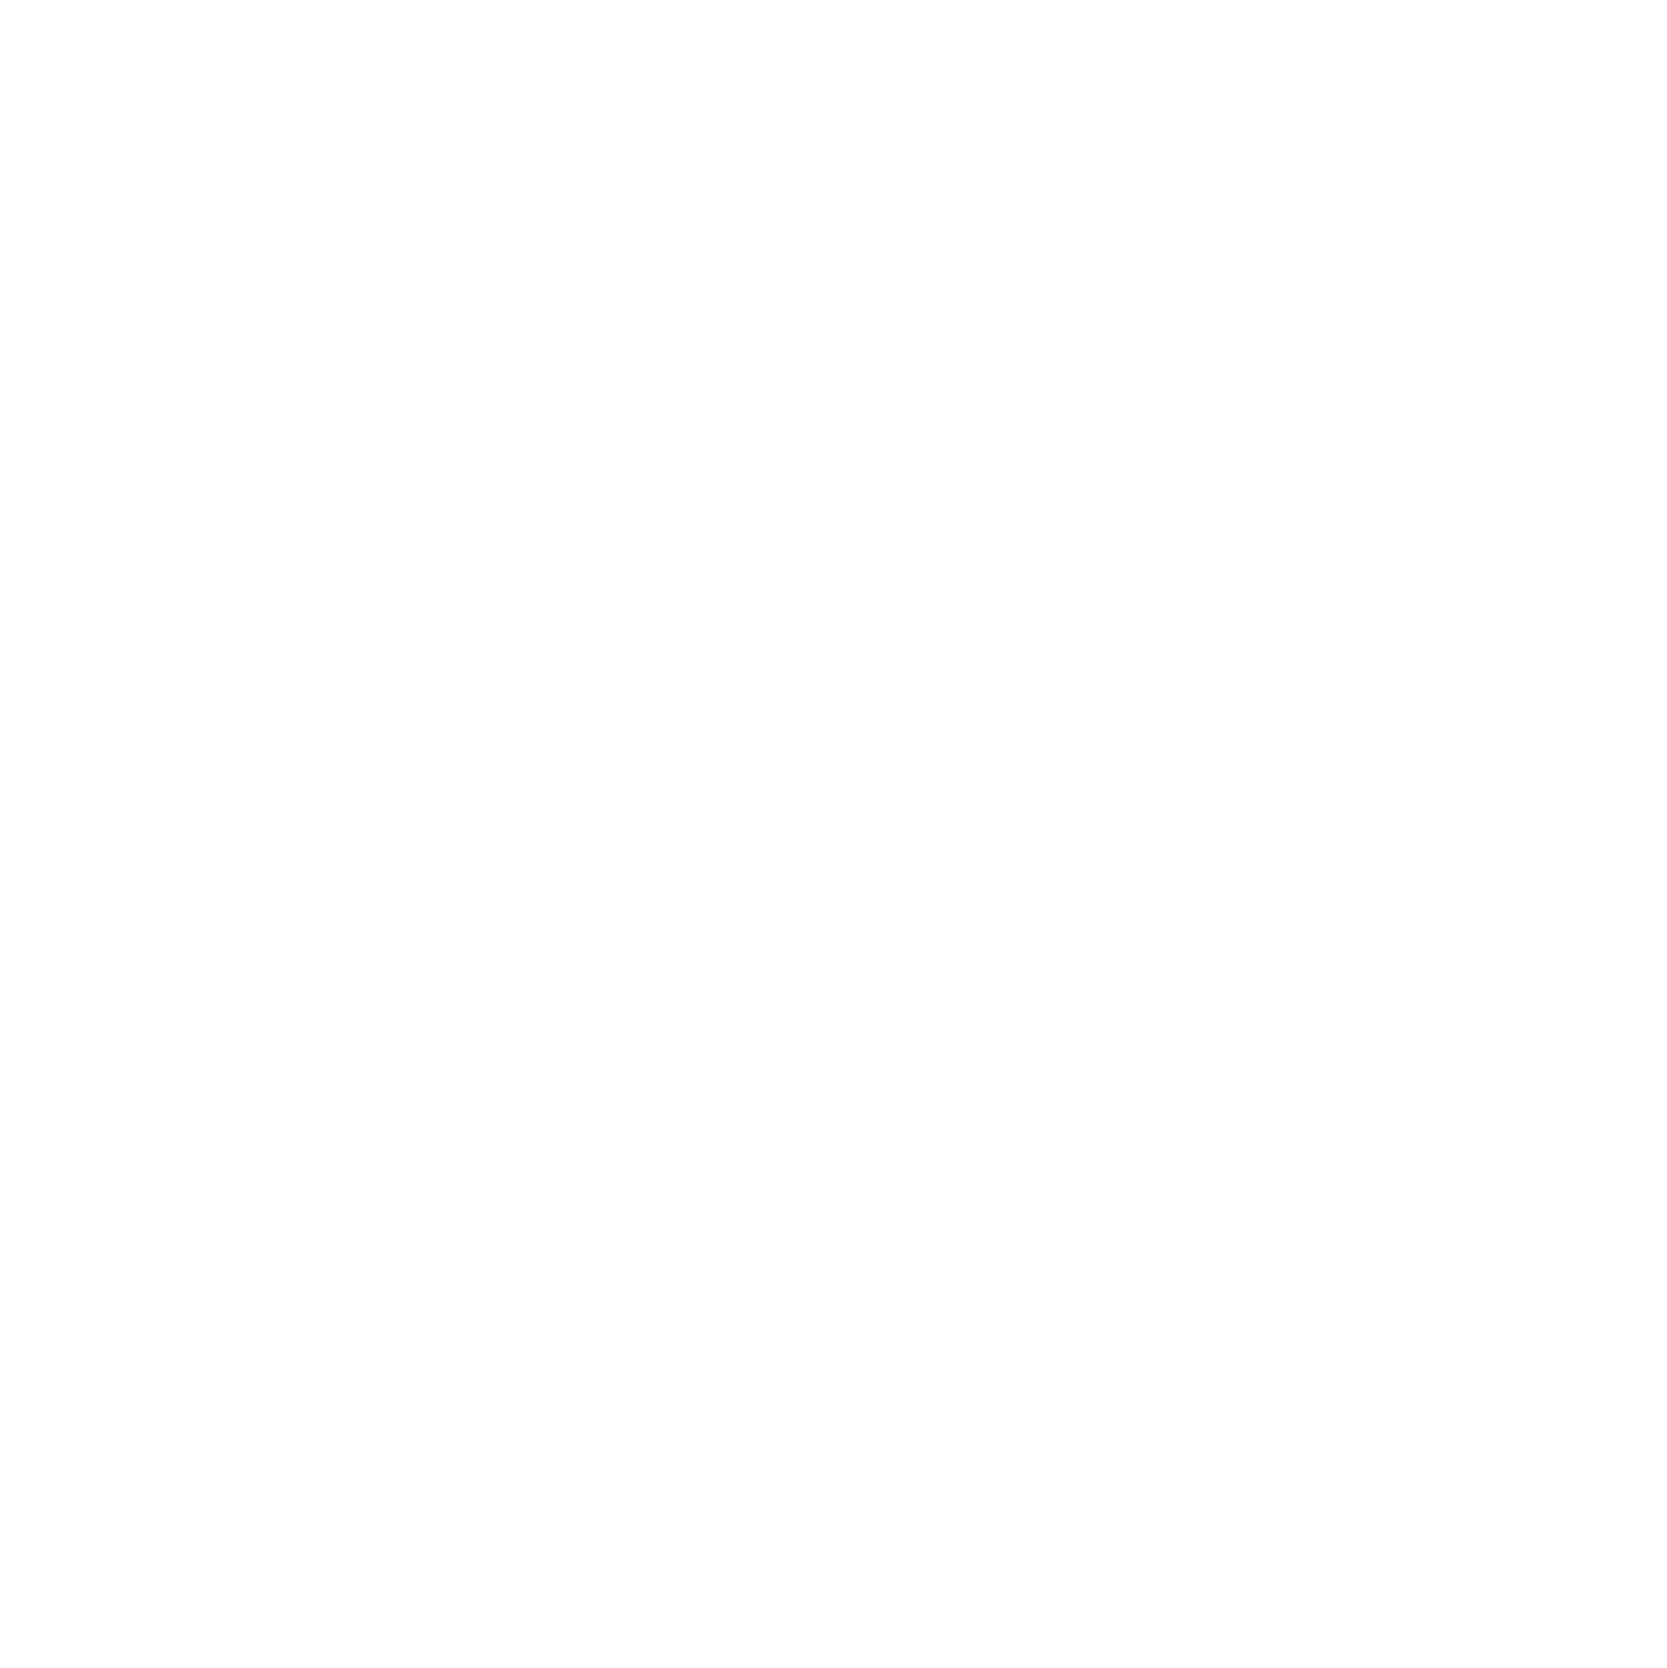 ACAMPADOC